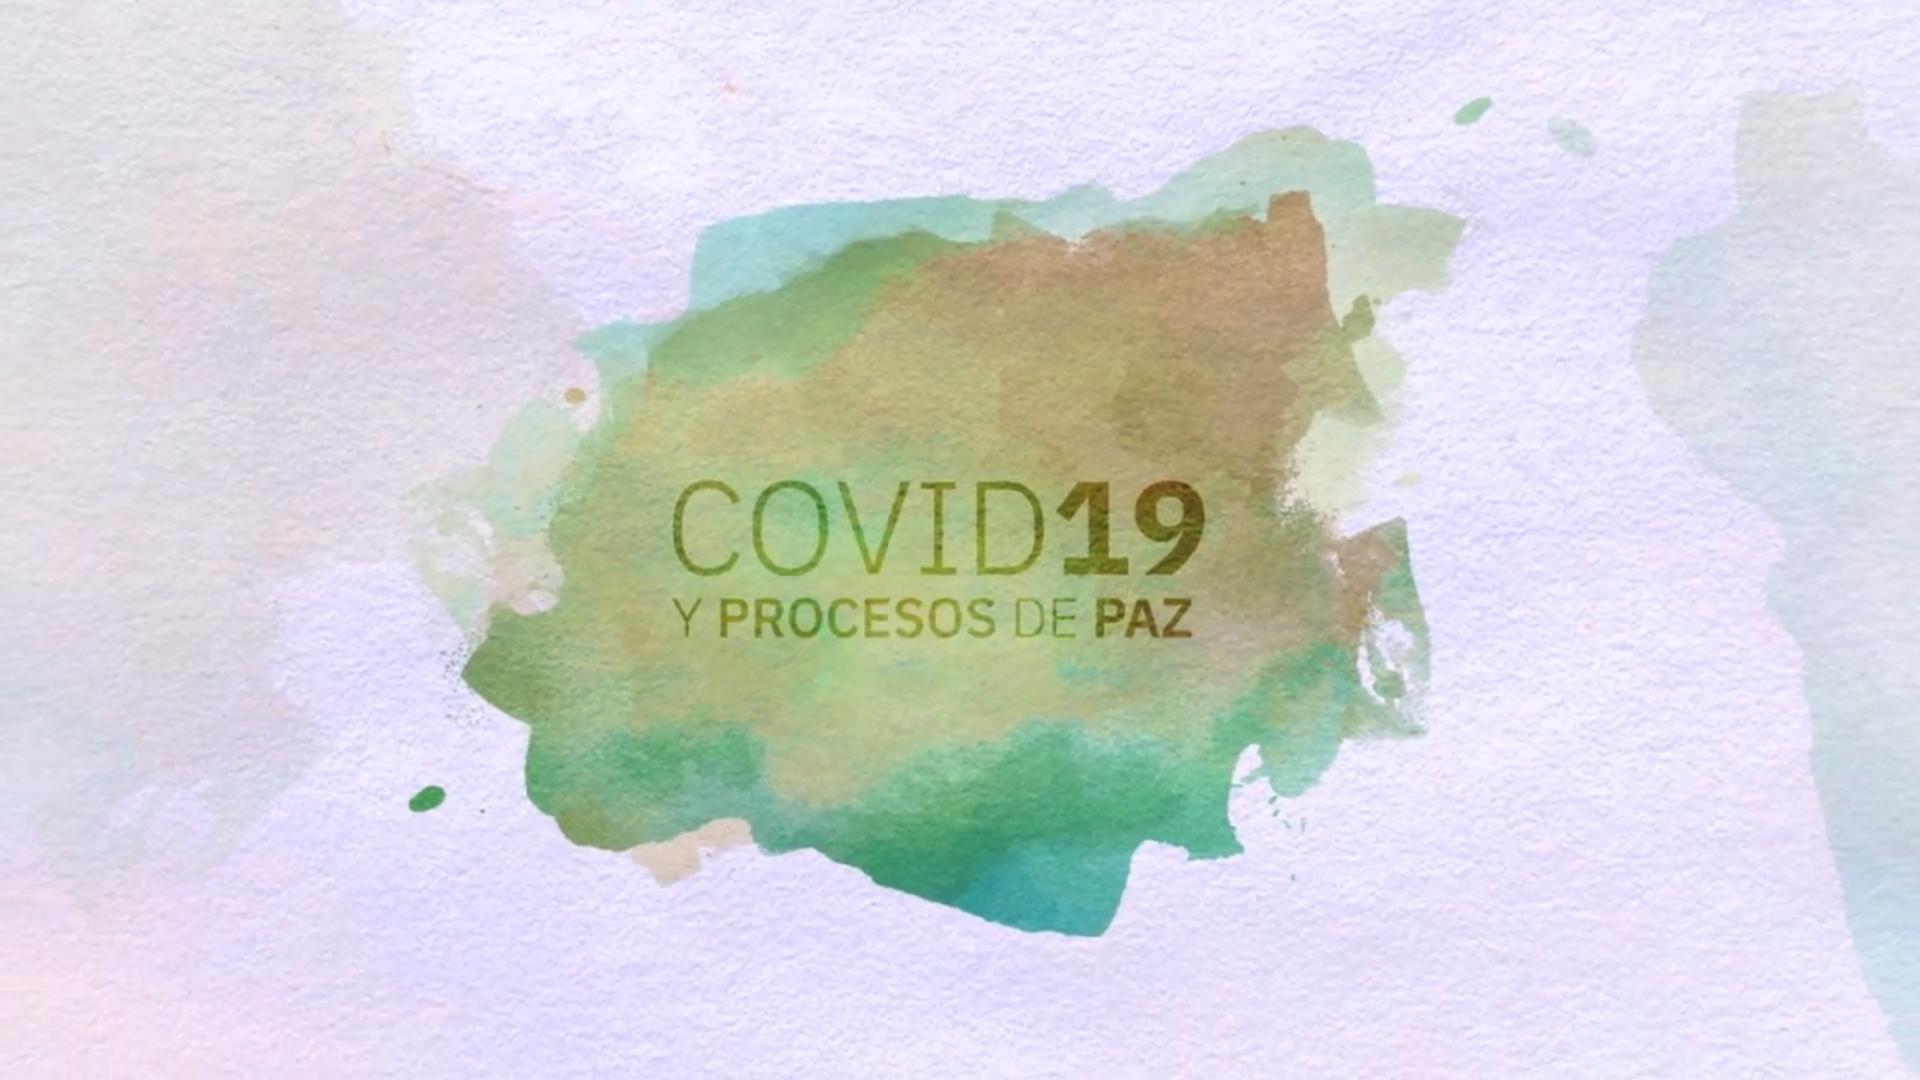 Interrelaciones entre la pandemia de la COVID-19, procesos de paz, conflictos y situación de derechos humanos